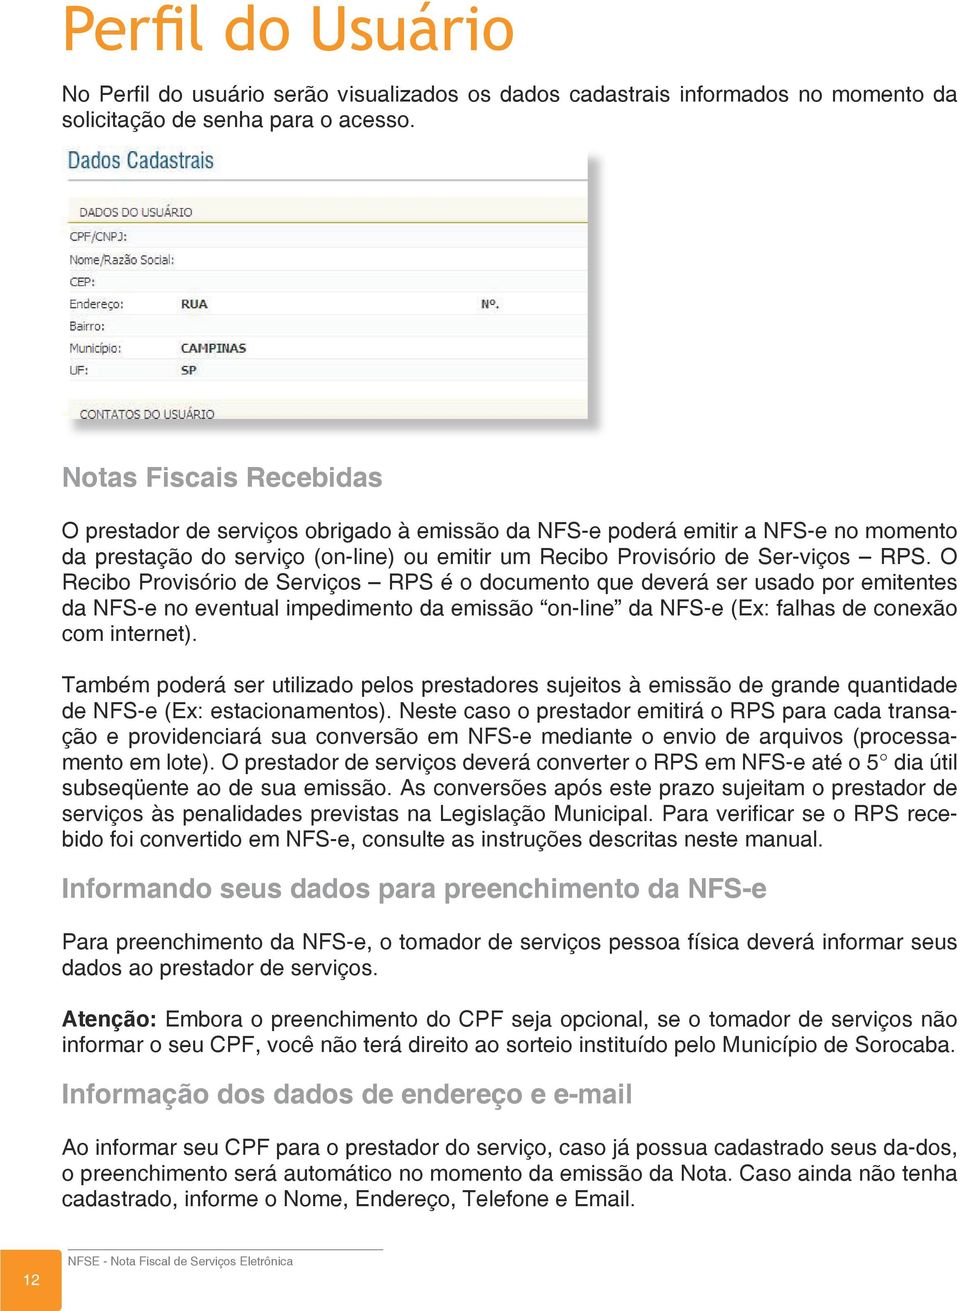 O Recibo Provisório de Serviços RPS é o documento que deverá ser usado por emitentes da NFS-e no eventual impedimento da emissão on-line da NFS-e (Ex: falhas de conexão com internet).